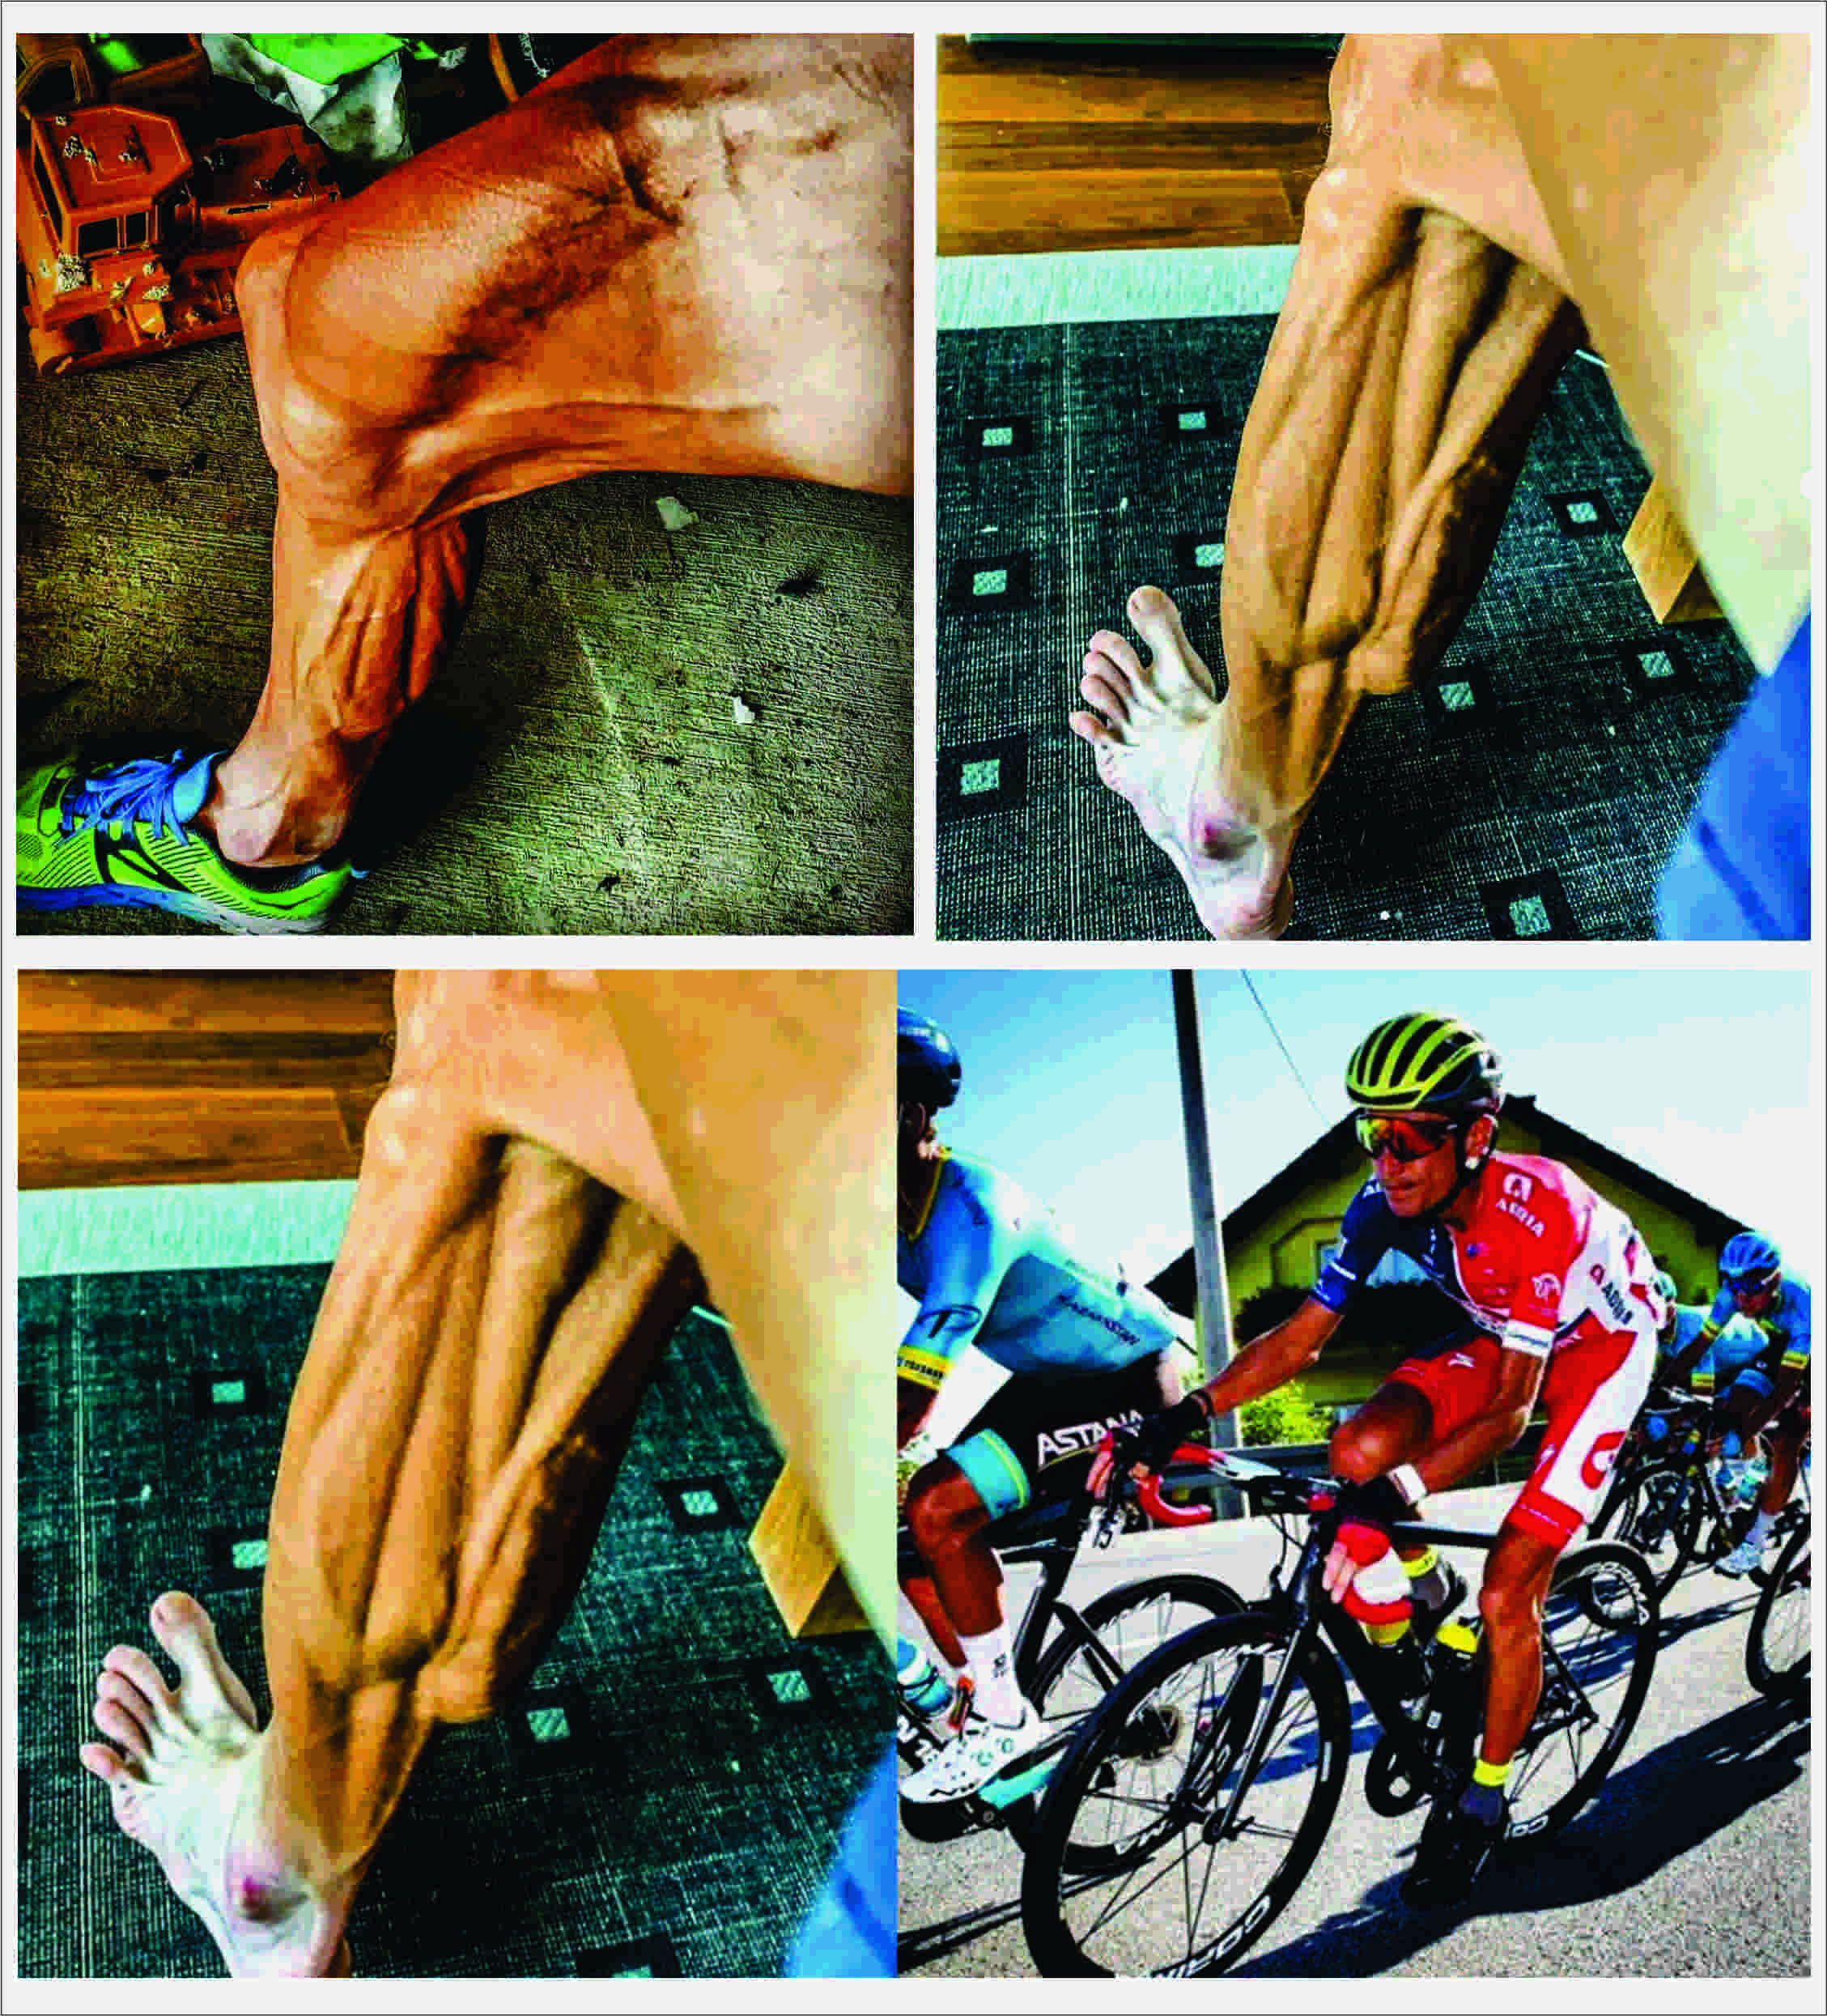 Las impresionantes imágenes de las piernas de un ciclista después de competir